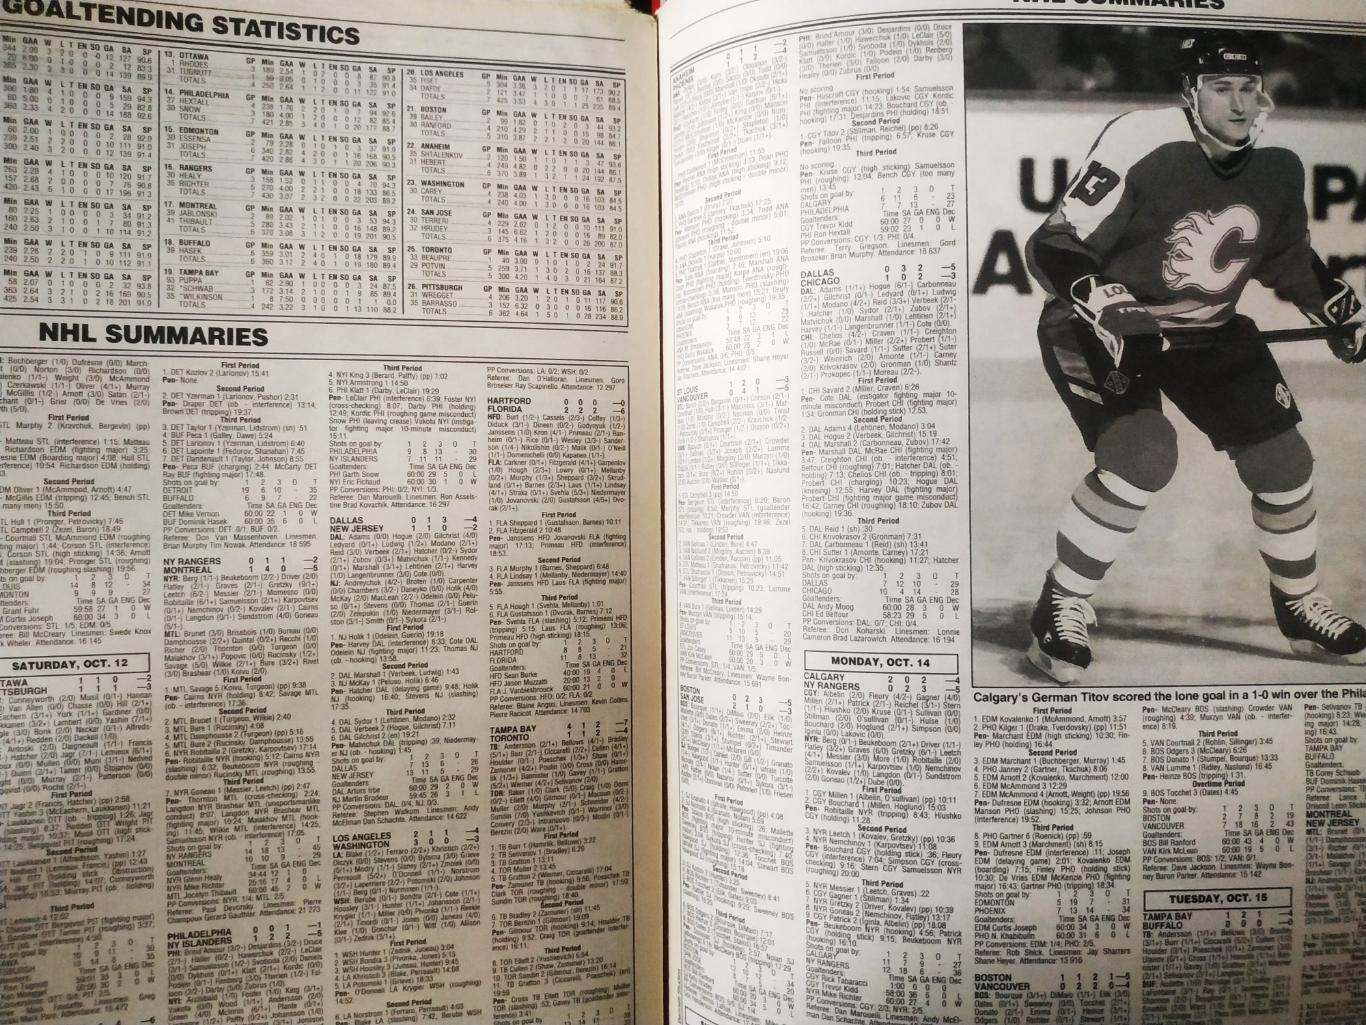 ХОККЕЙ ЖУРНАЛ ЕЖЕНЕДЕЛЬНИК НХЛ НОВОСТИ ХОККЕЯ NHL NOV.1 1996 THE HOCKEY NEWS 5